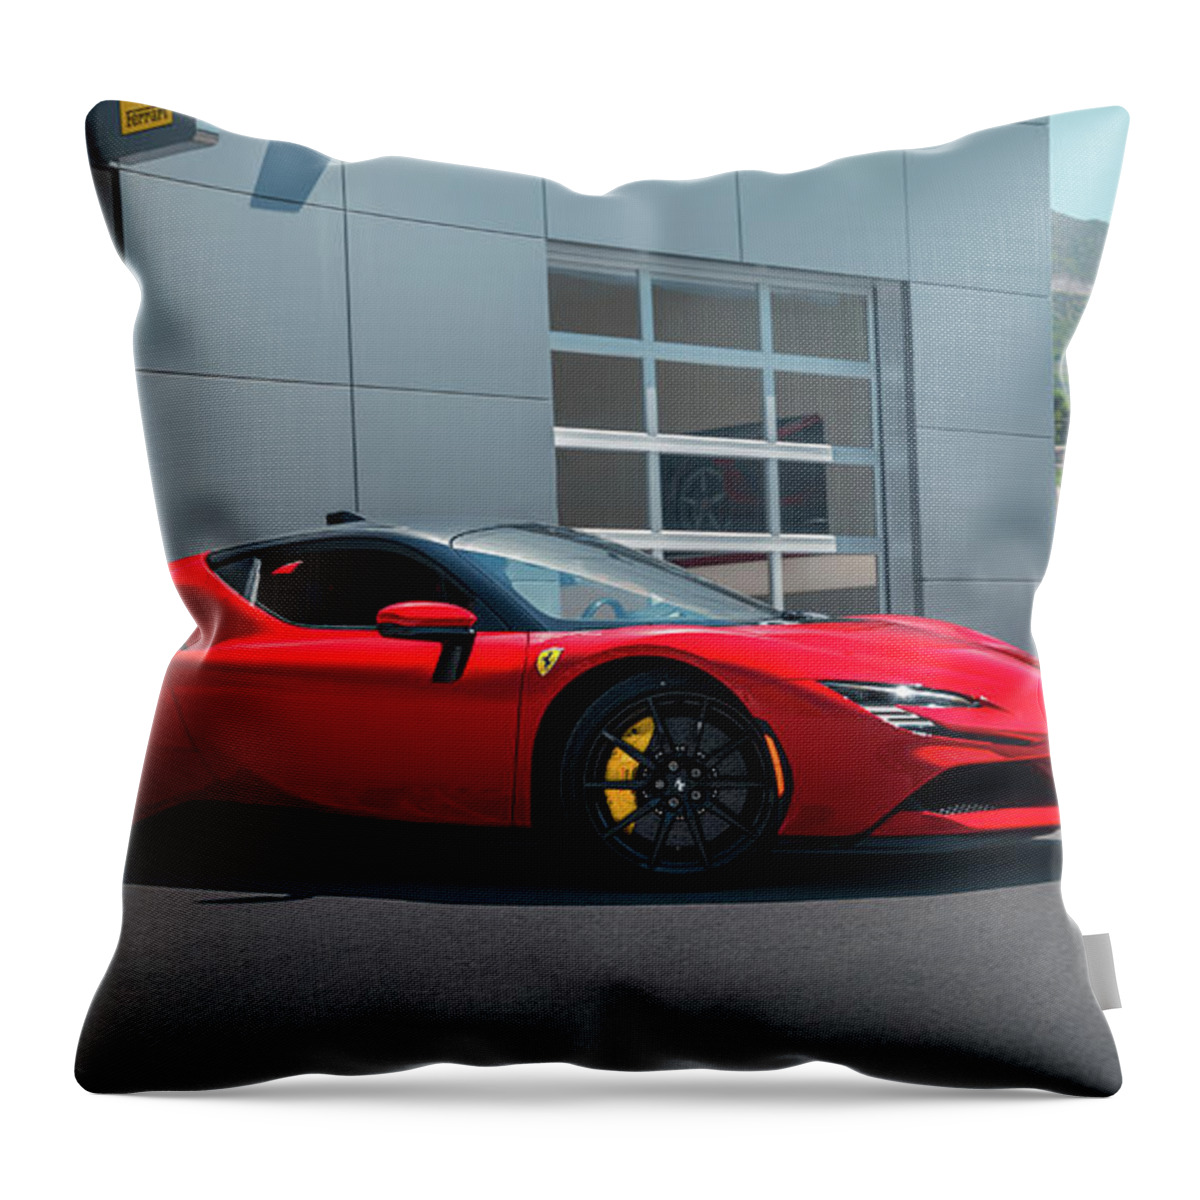 Ferrari Throw Pillow featuring the photograph Ferrari SF90 by David Whitaker Visuals